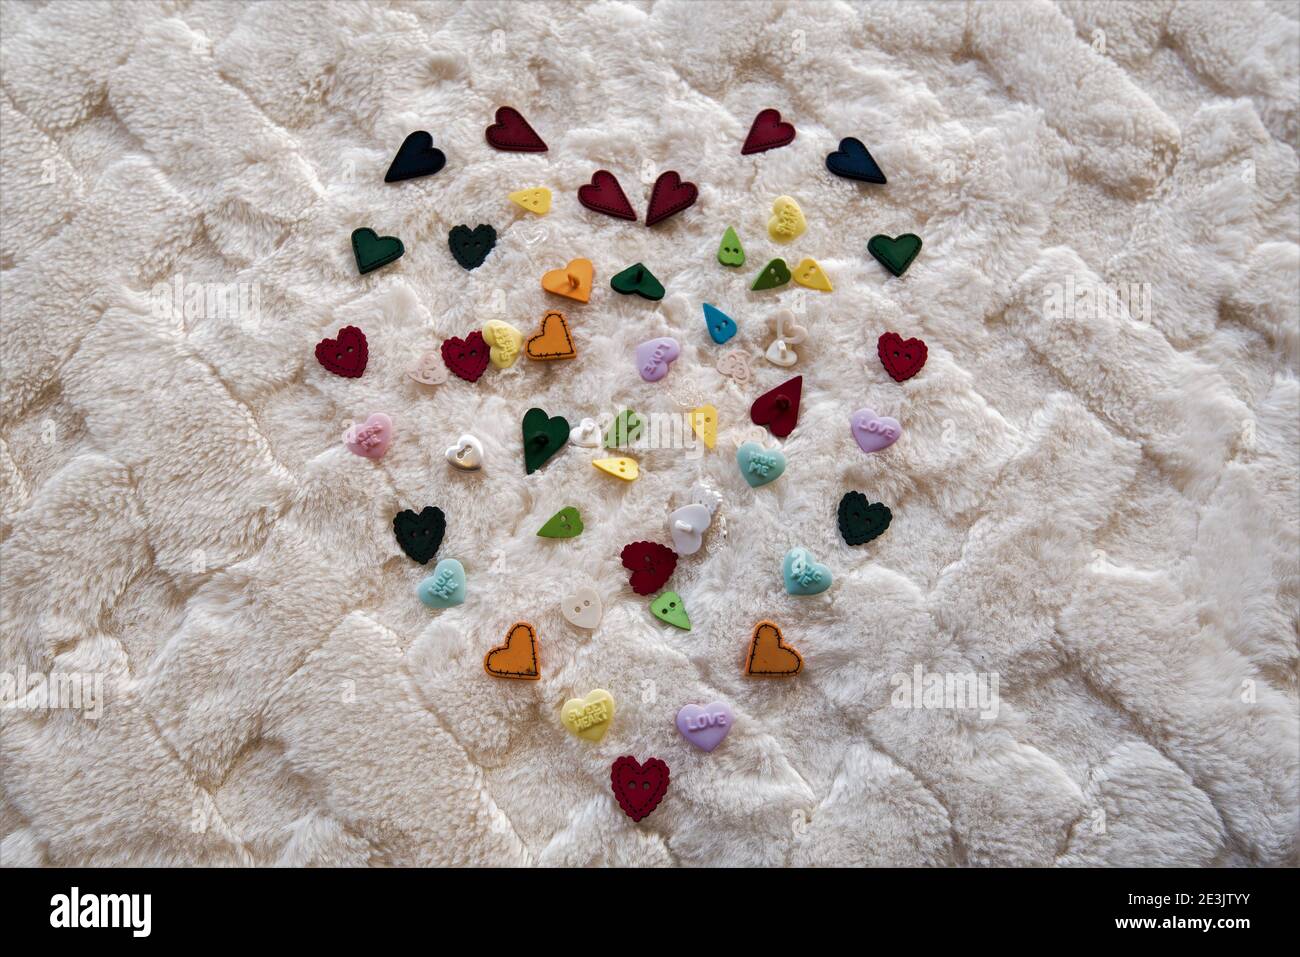 Mehrfarbiges Herzdesign auf einer weichen weißen Decke. Das Design besteht hauptsächlich aus herzförmigen Knöpfen. Stockfoto